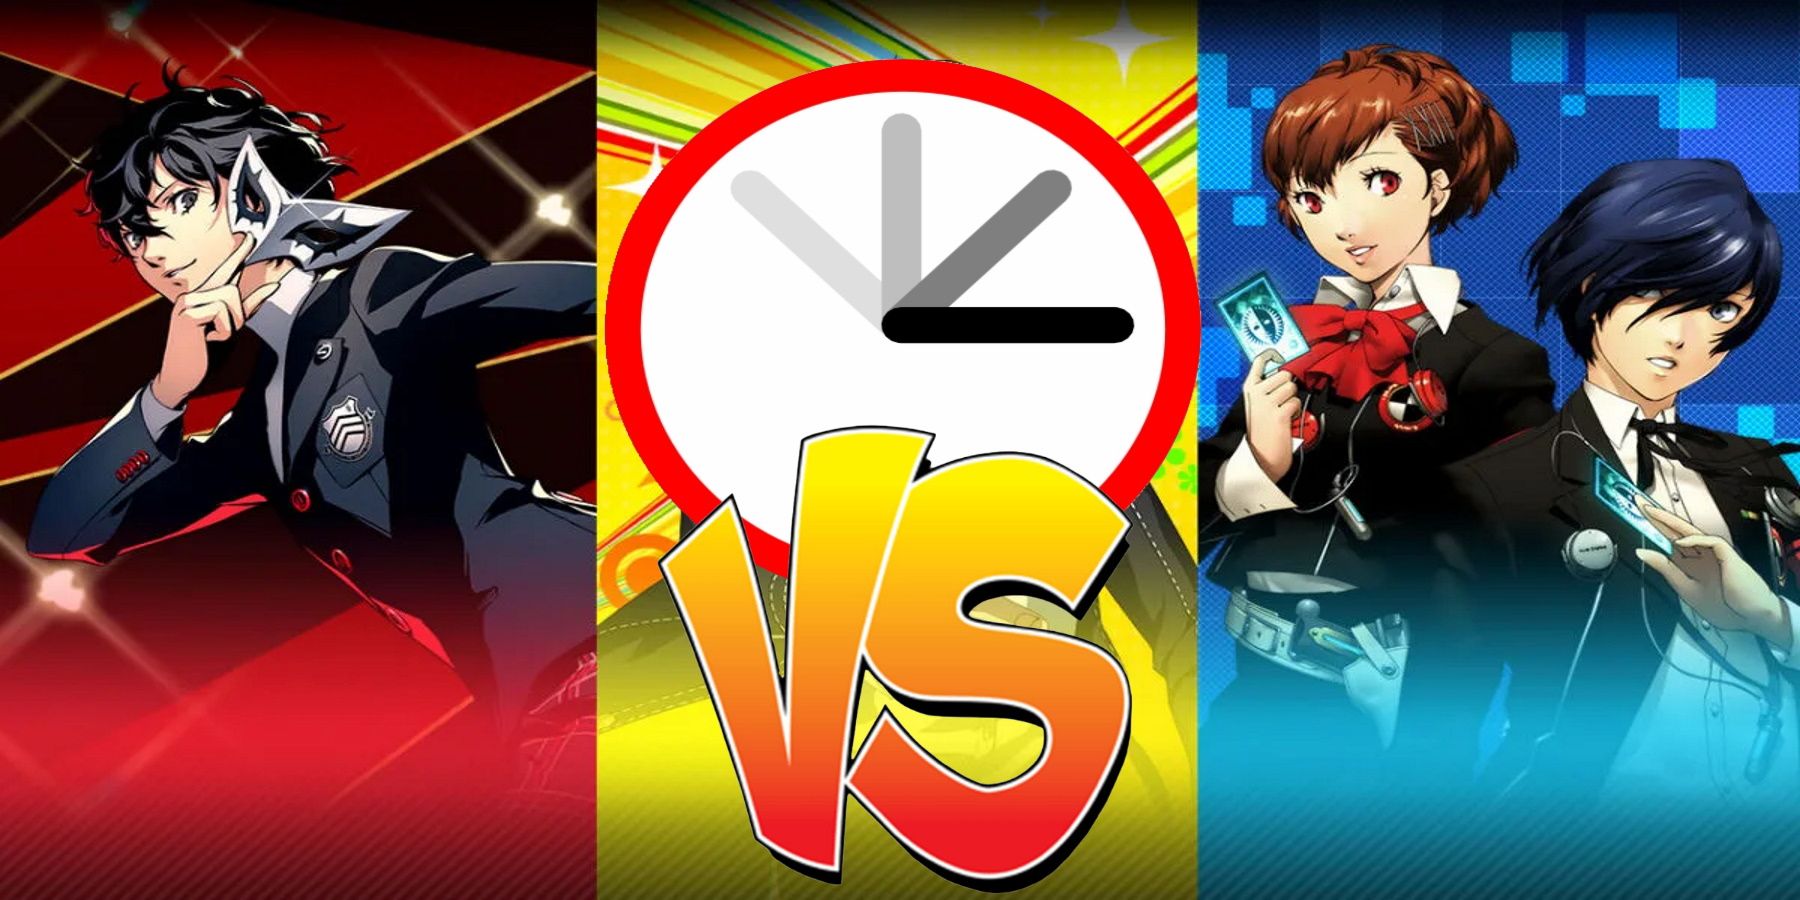 Persona 3 Portable vs Persona 5 Royal как долго бить